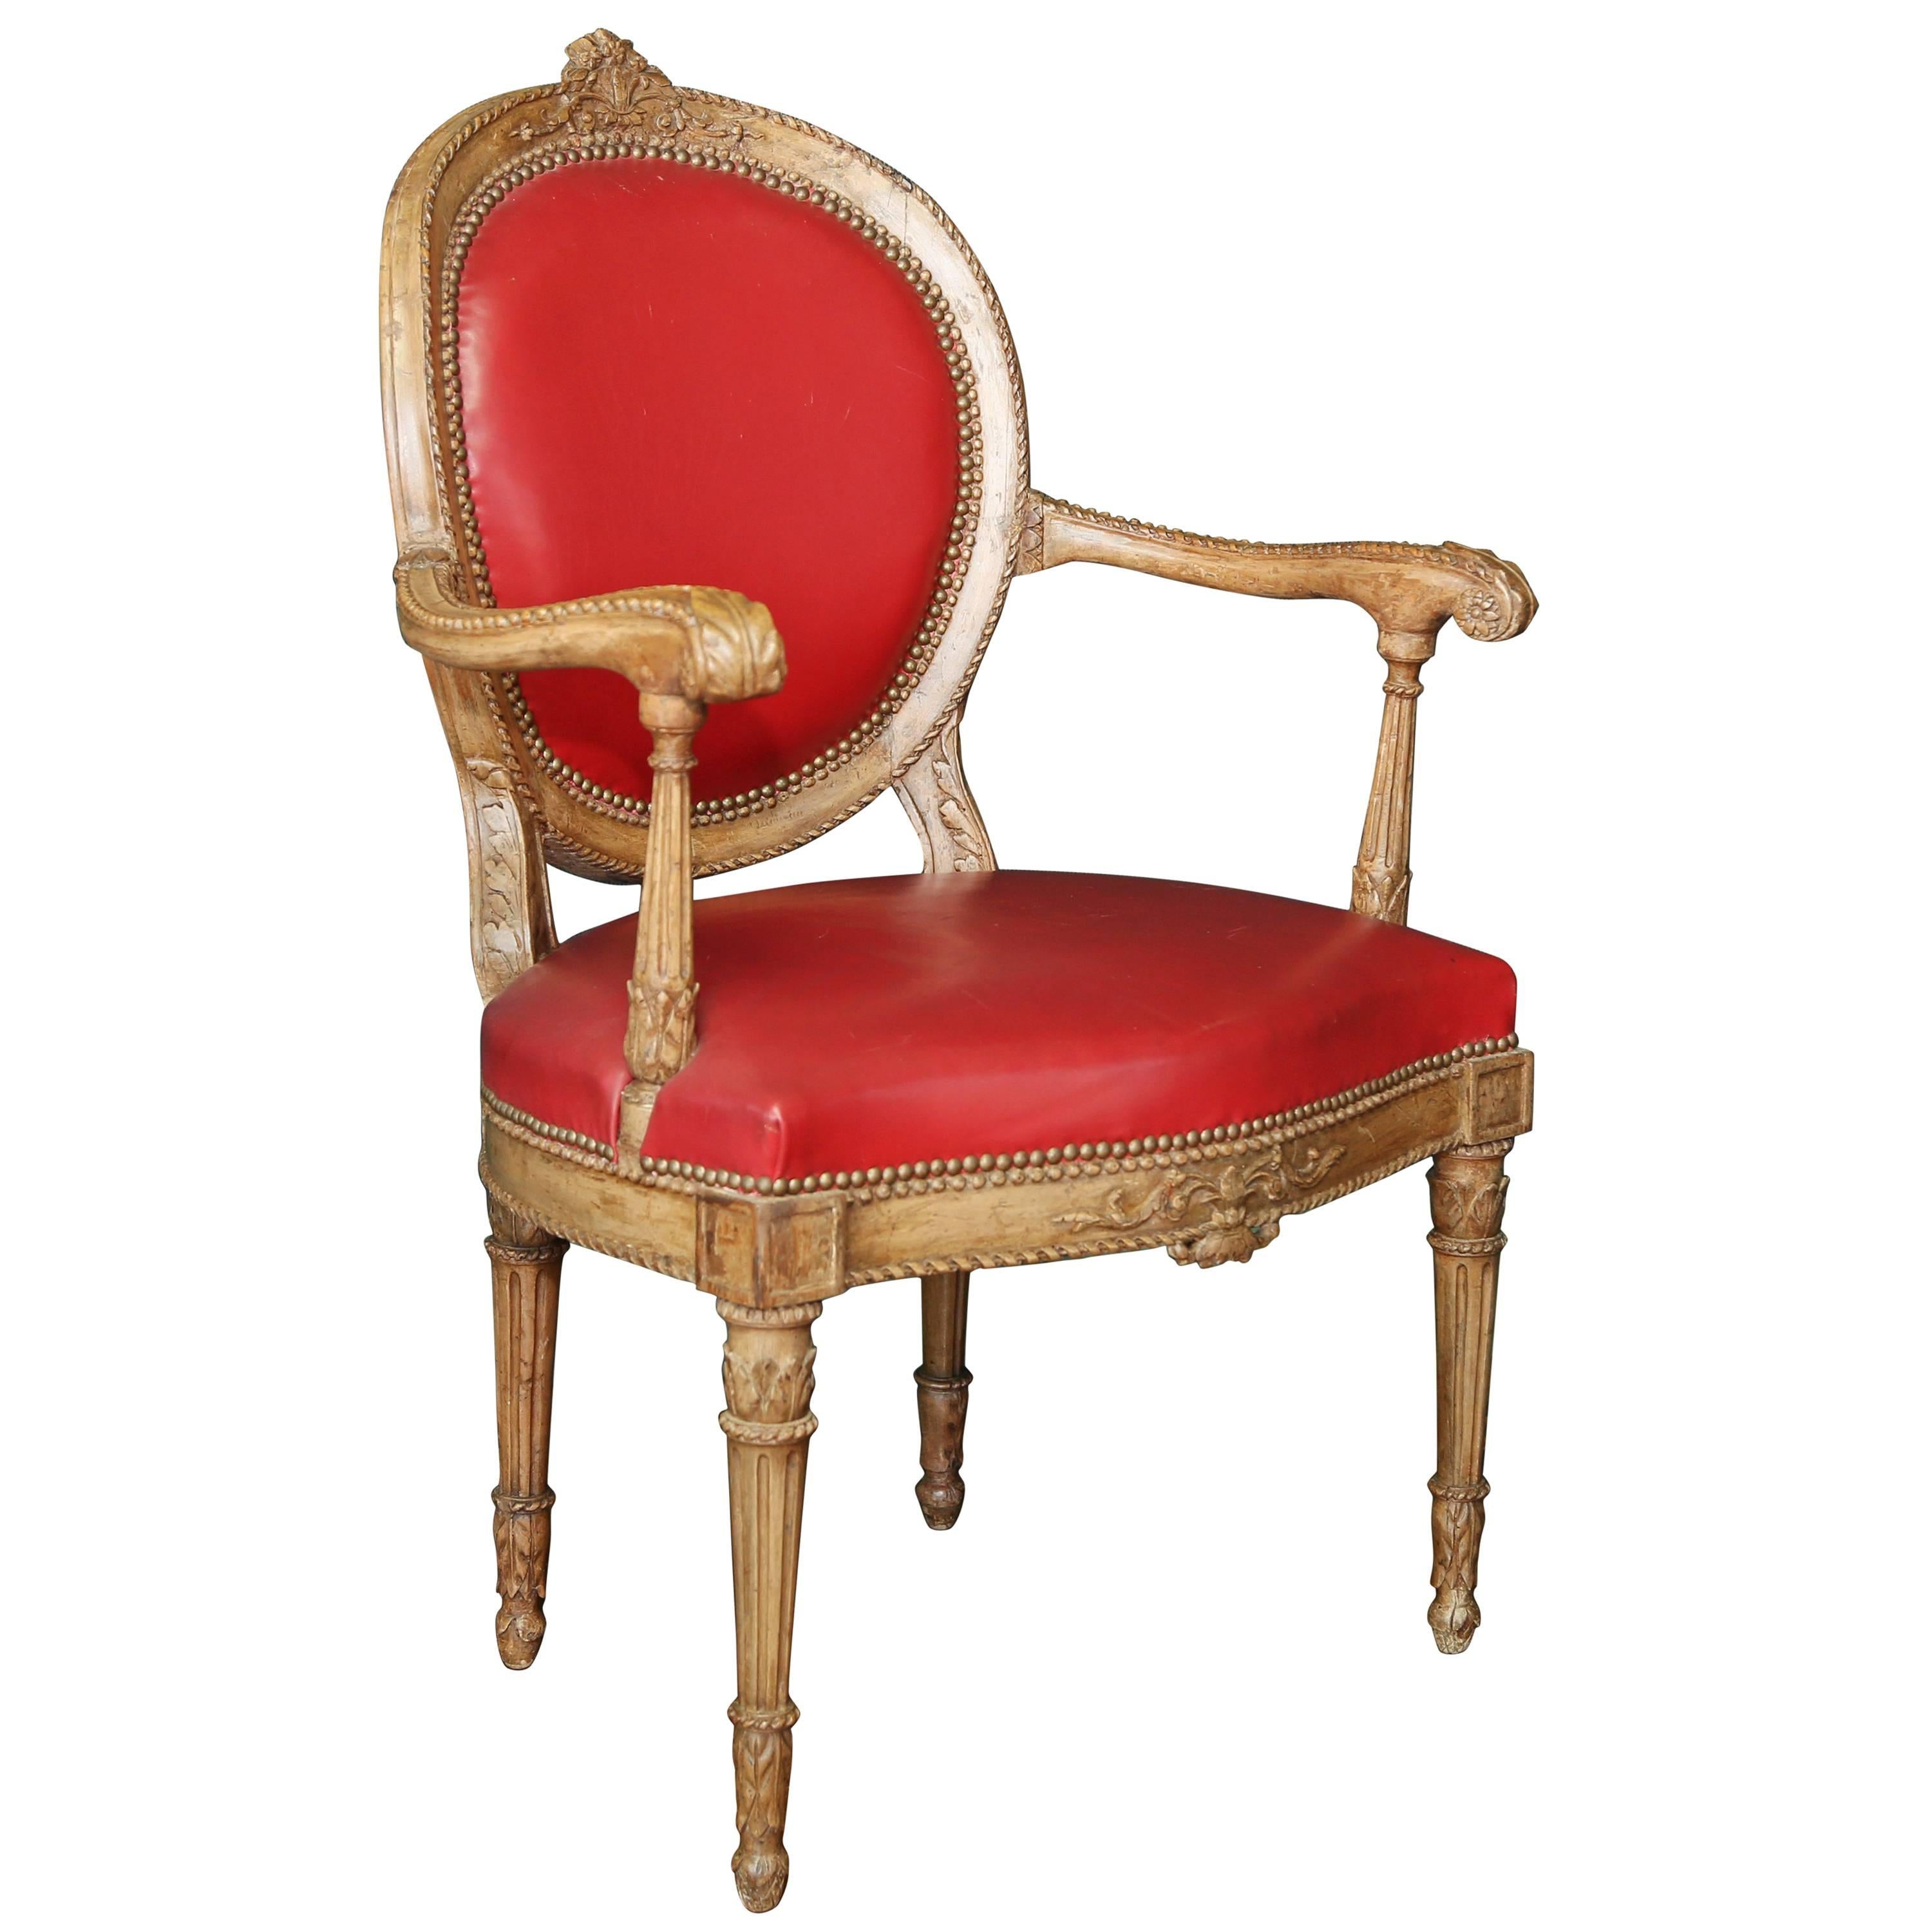 Ovaler Sessel mit Rückenlehne aus der Zeit Ludwigs XVI.